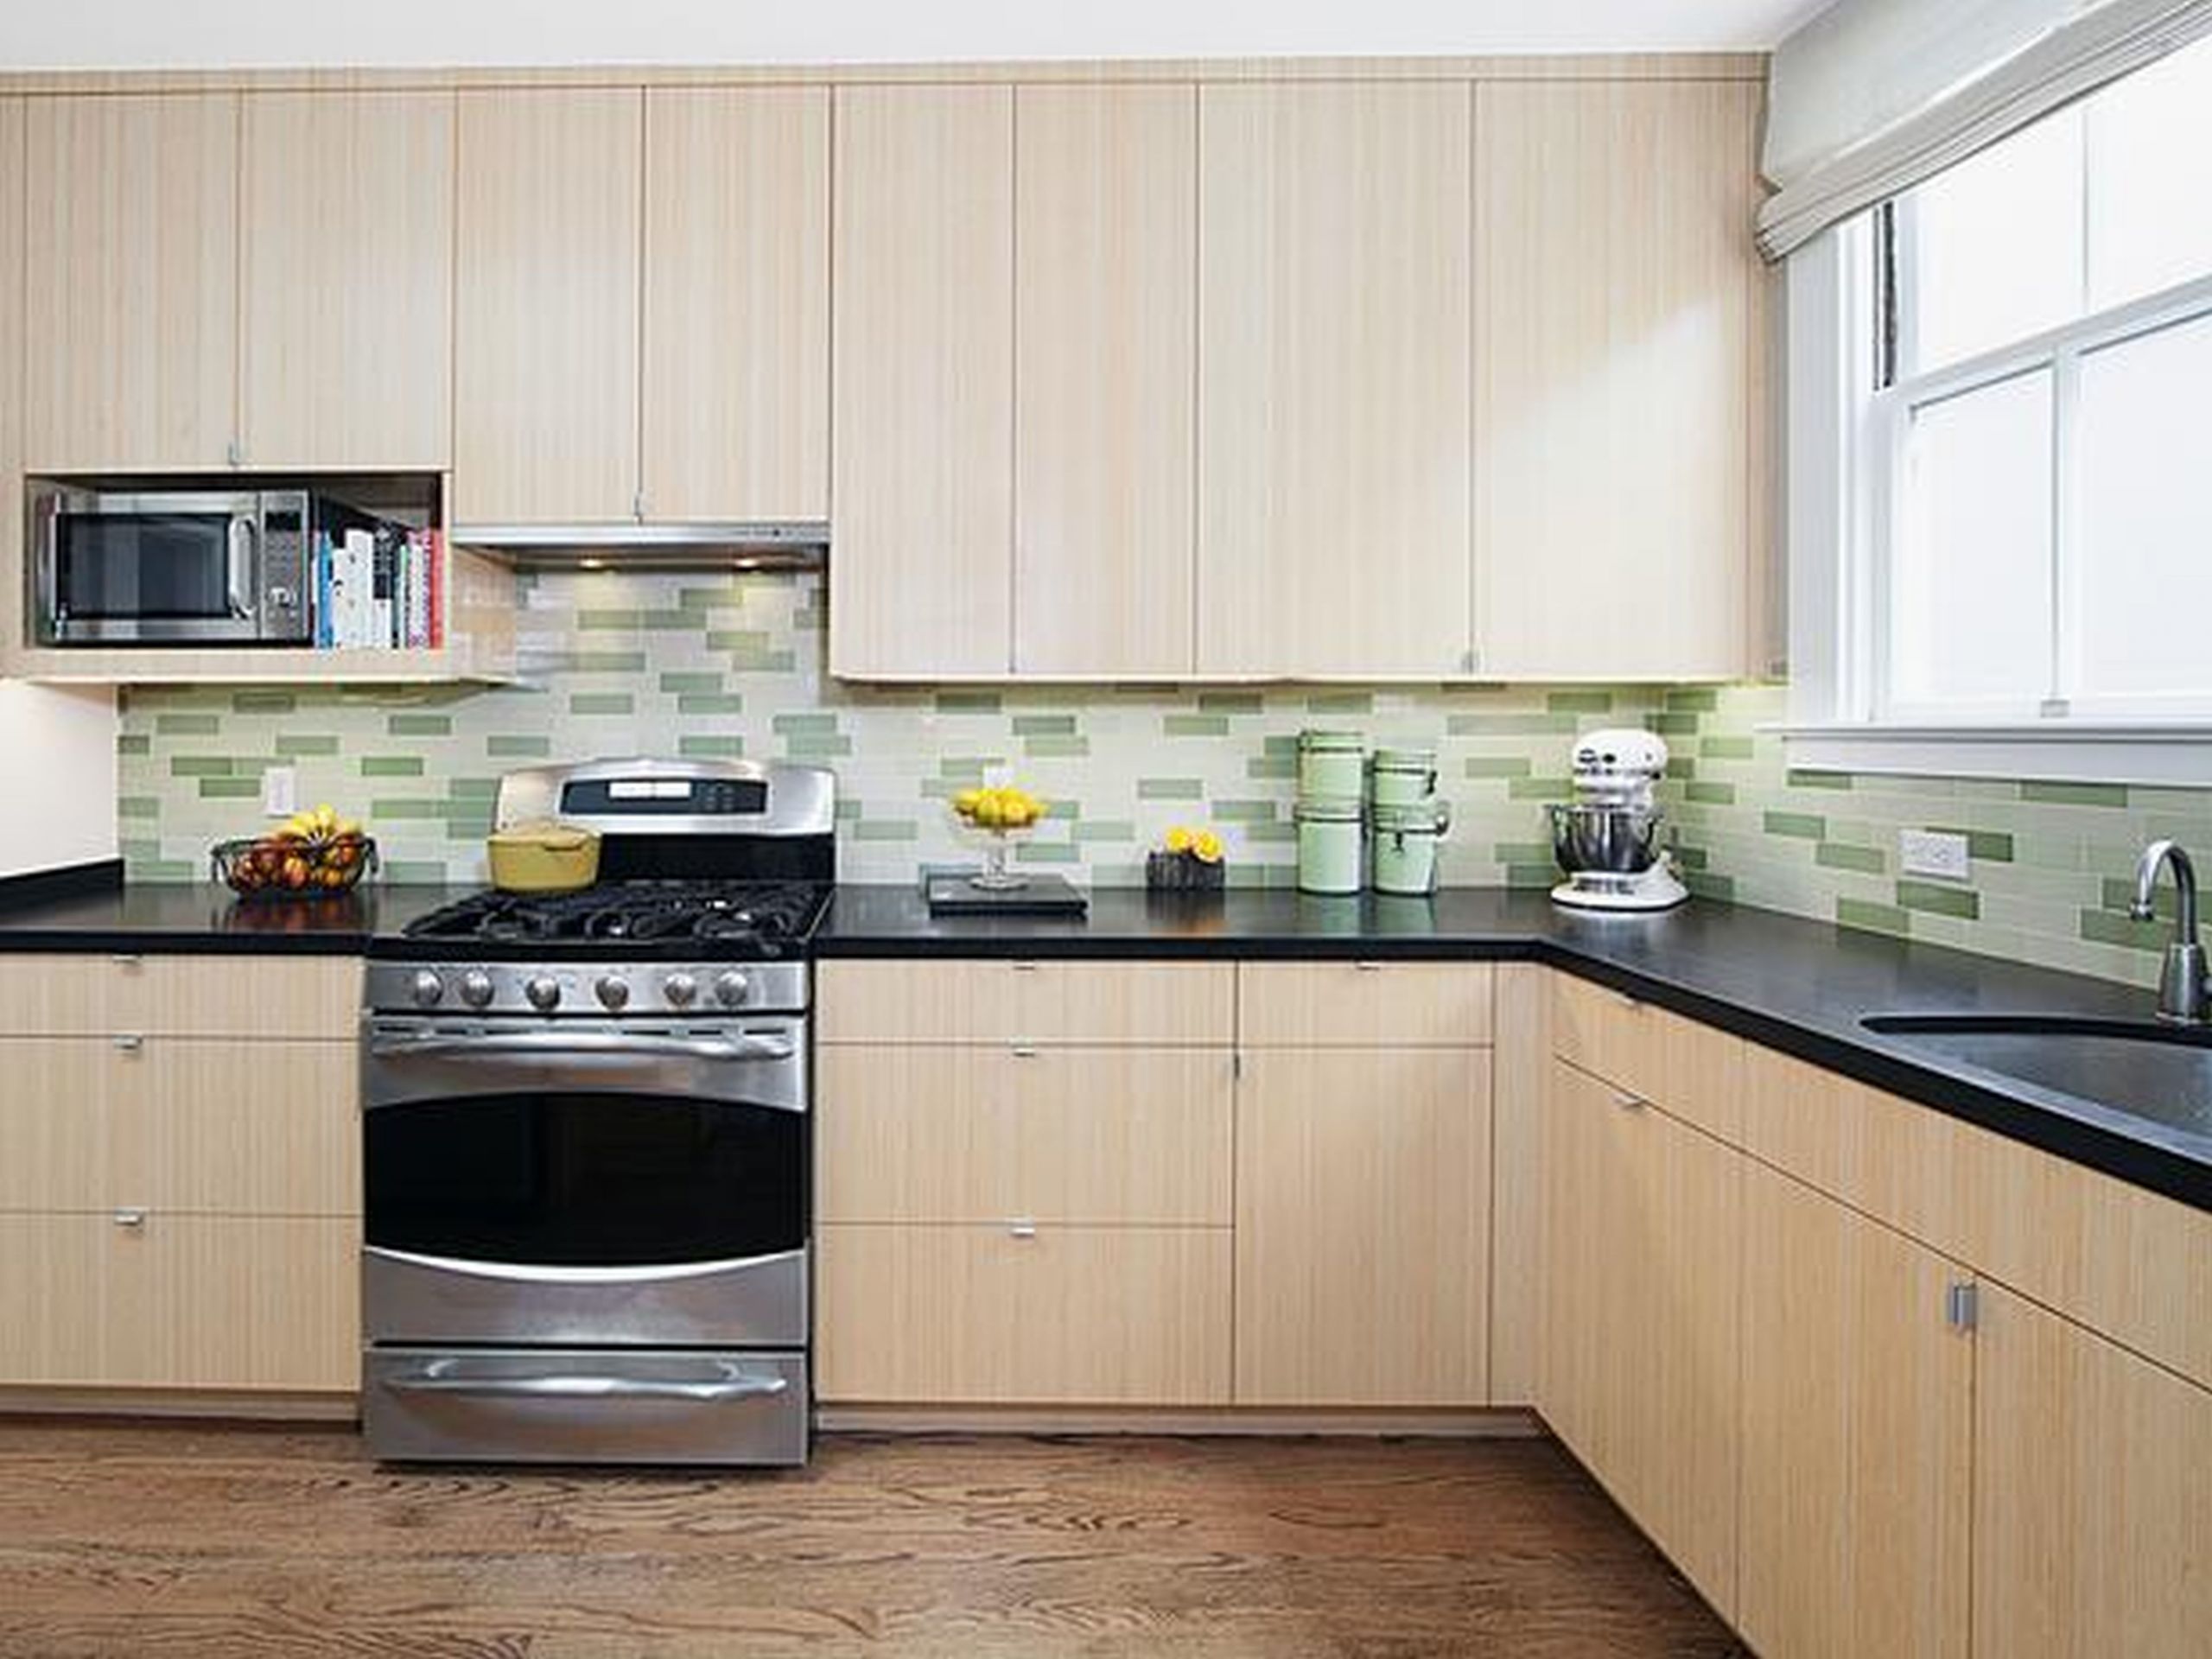 Backsplash Panels For Kitchen
 Tiles for Kitchen Back Splash A Solution for Natural and